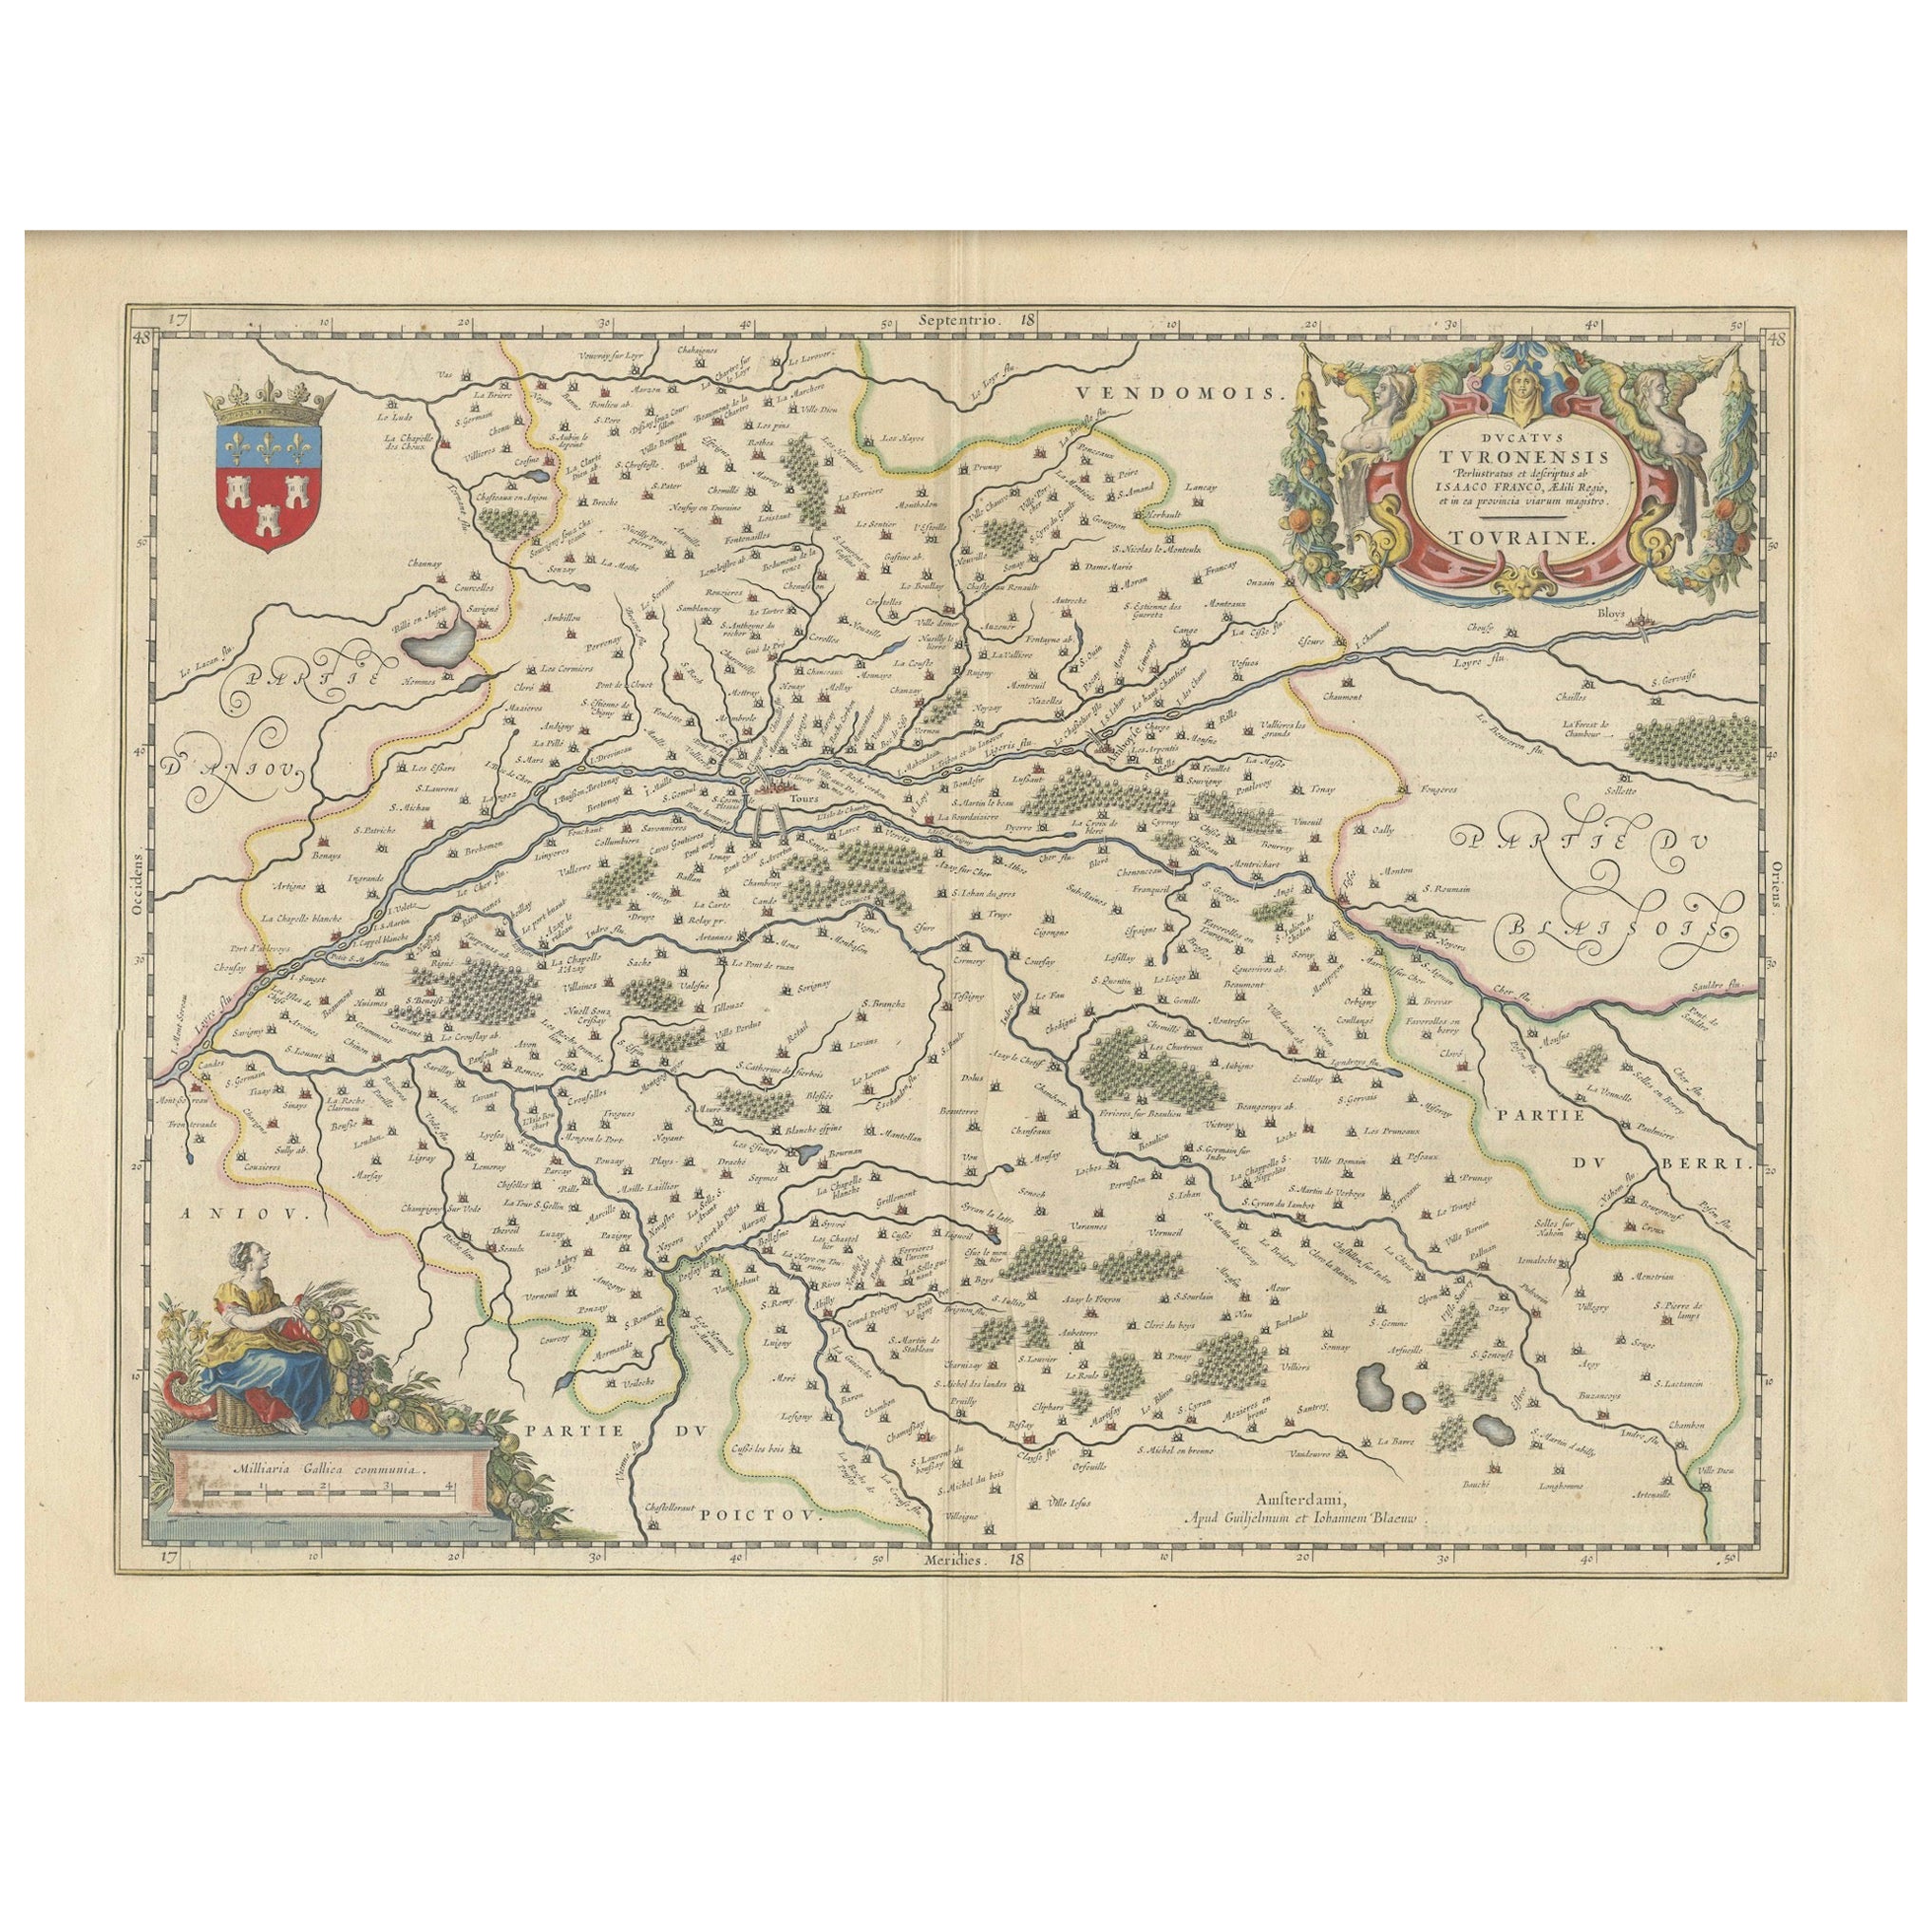 L'Elegance cartographique de la Touraine : Une carte du 17e siècle montrant le patrimoine français